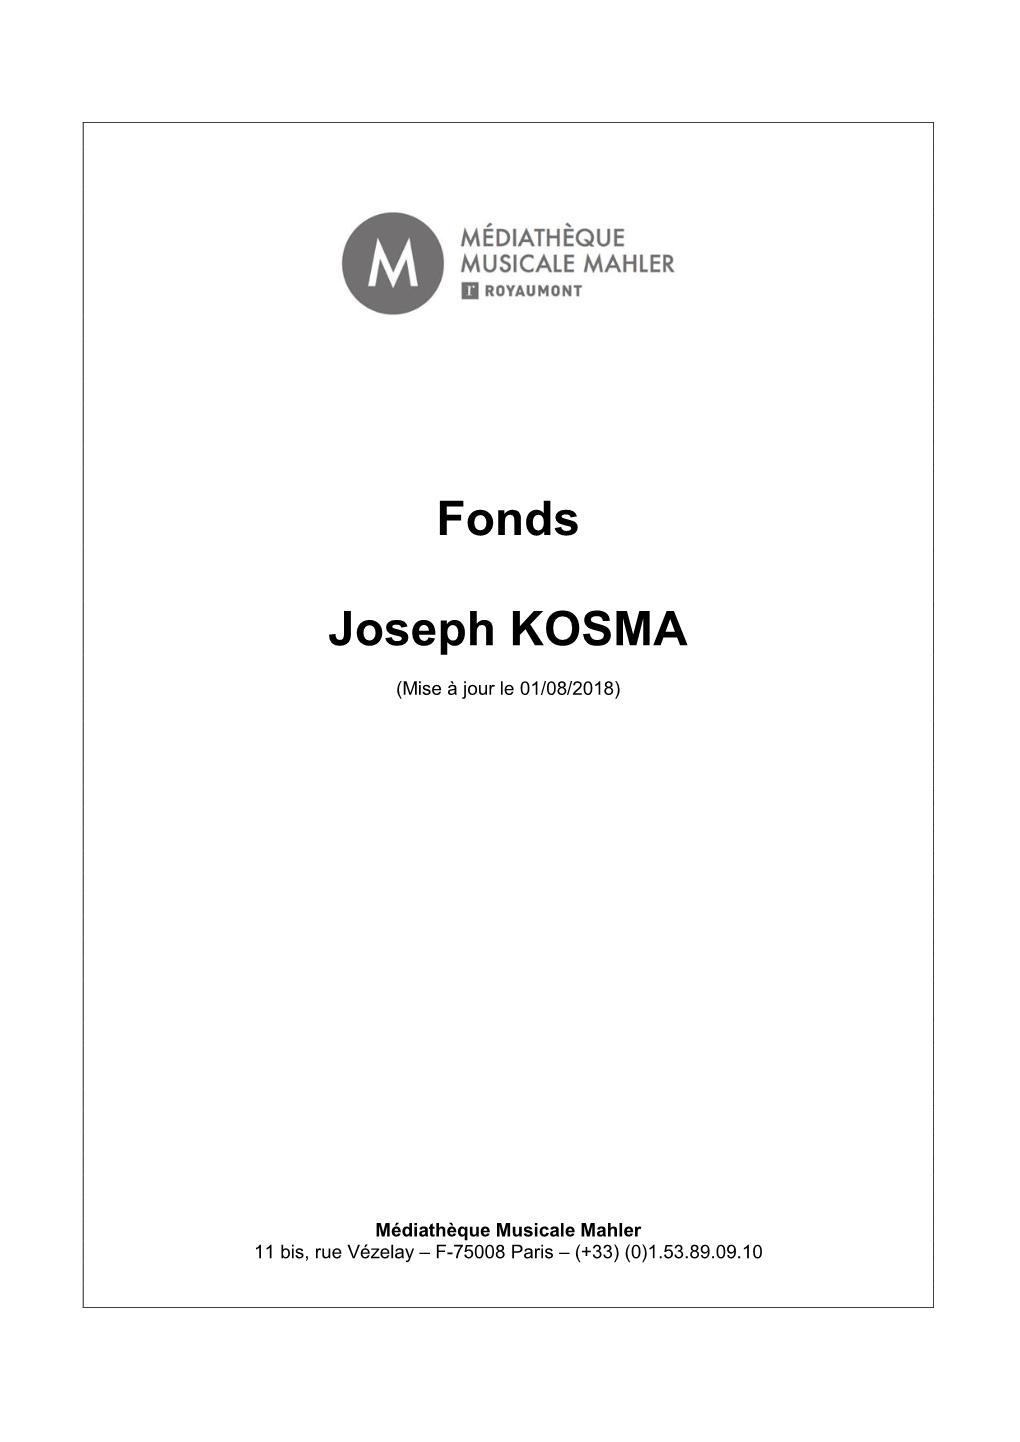 Fonds Joseph Kosma 2